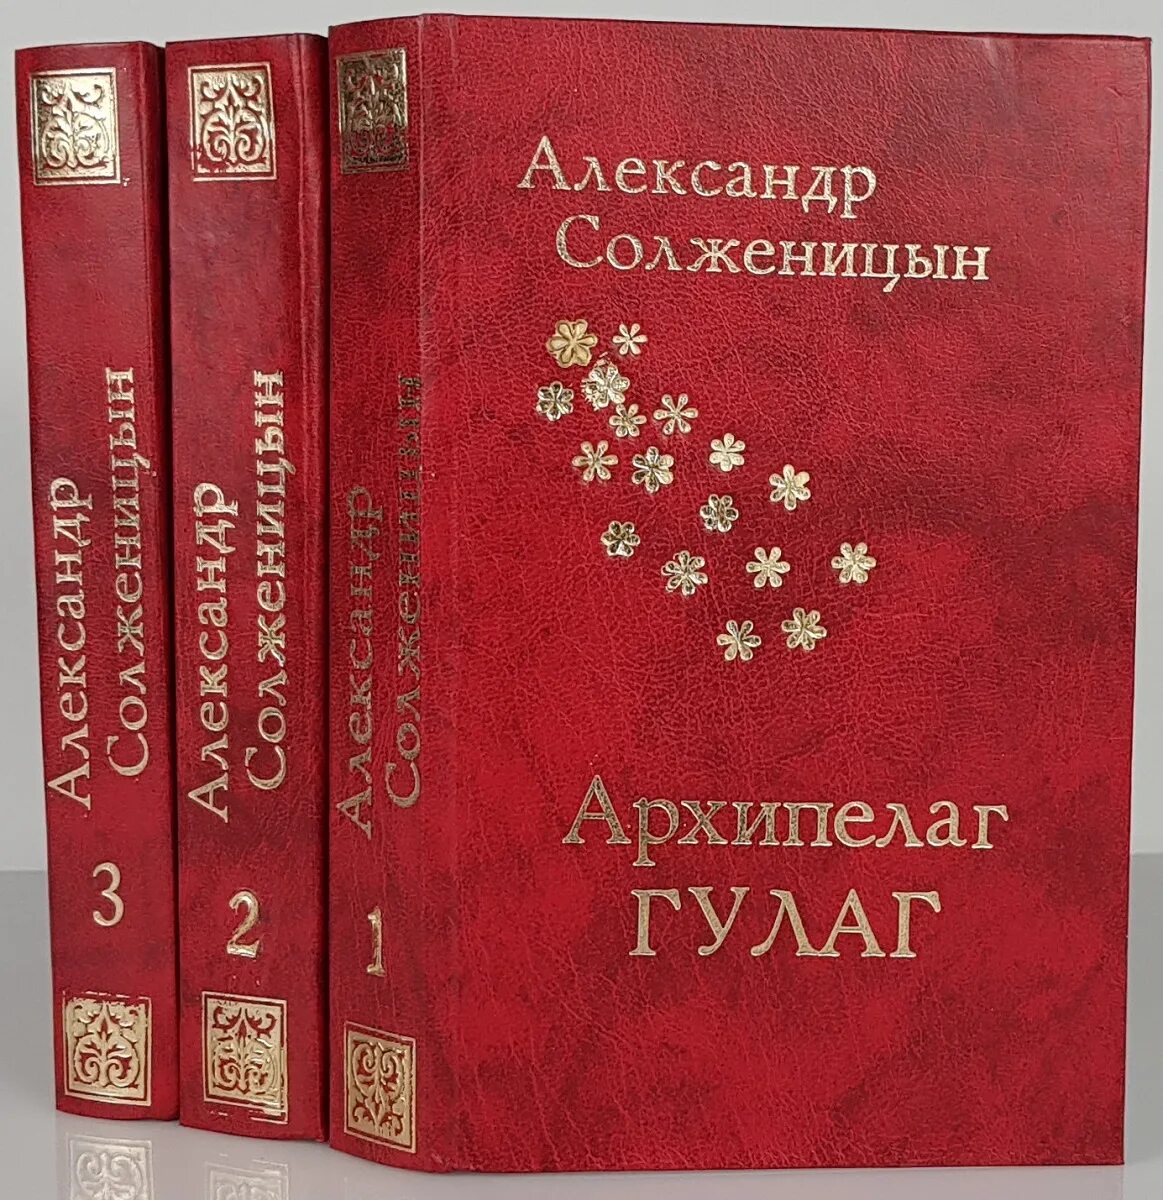 «Архипелаг ГУЛАГ», 1968. Солженицын книга архипелаг ГУЛАГ книга.